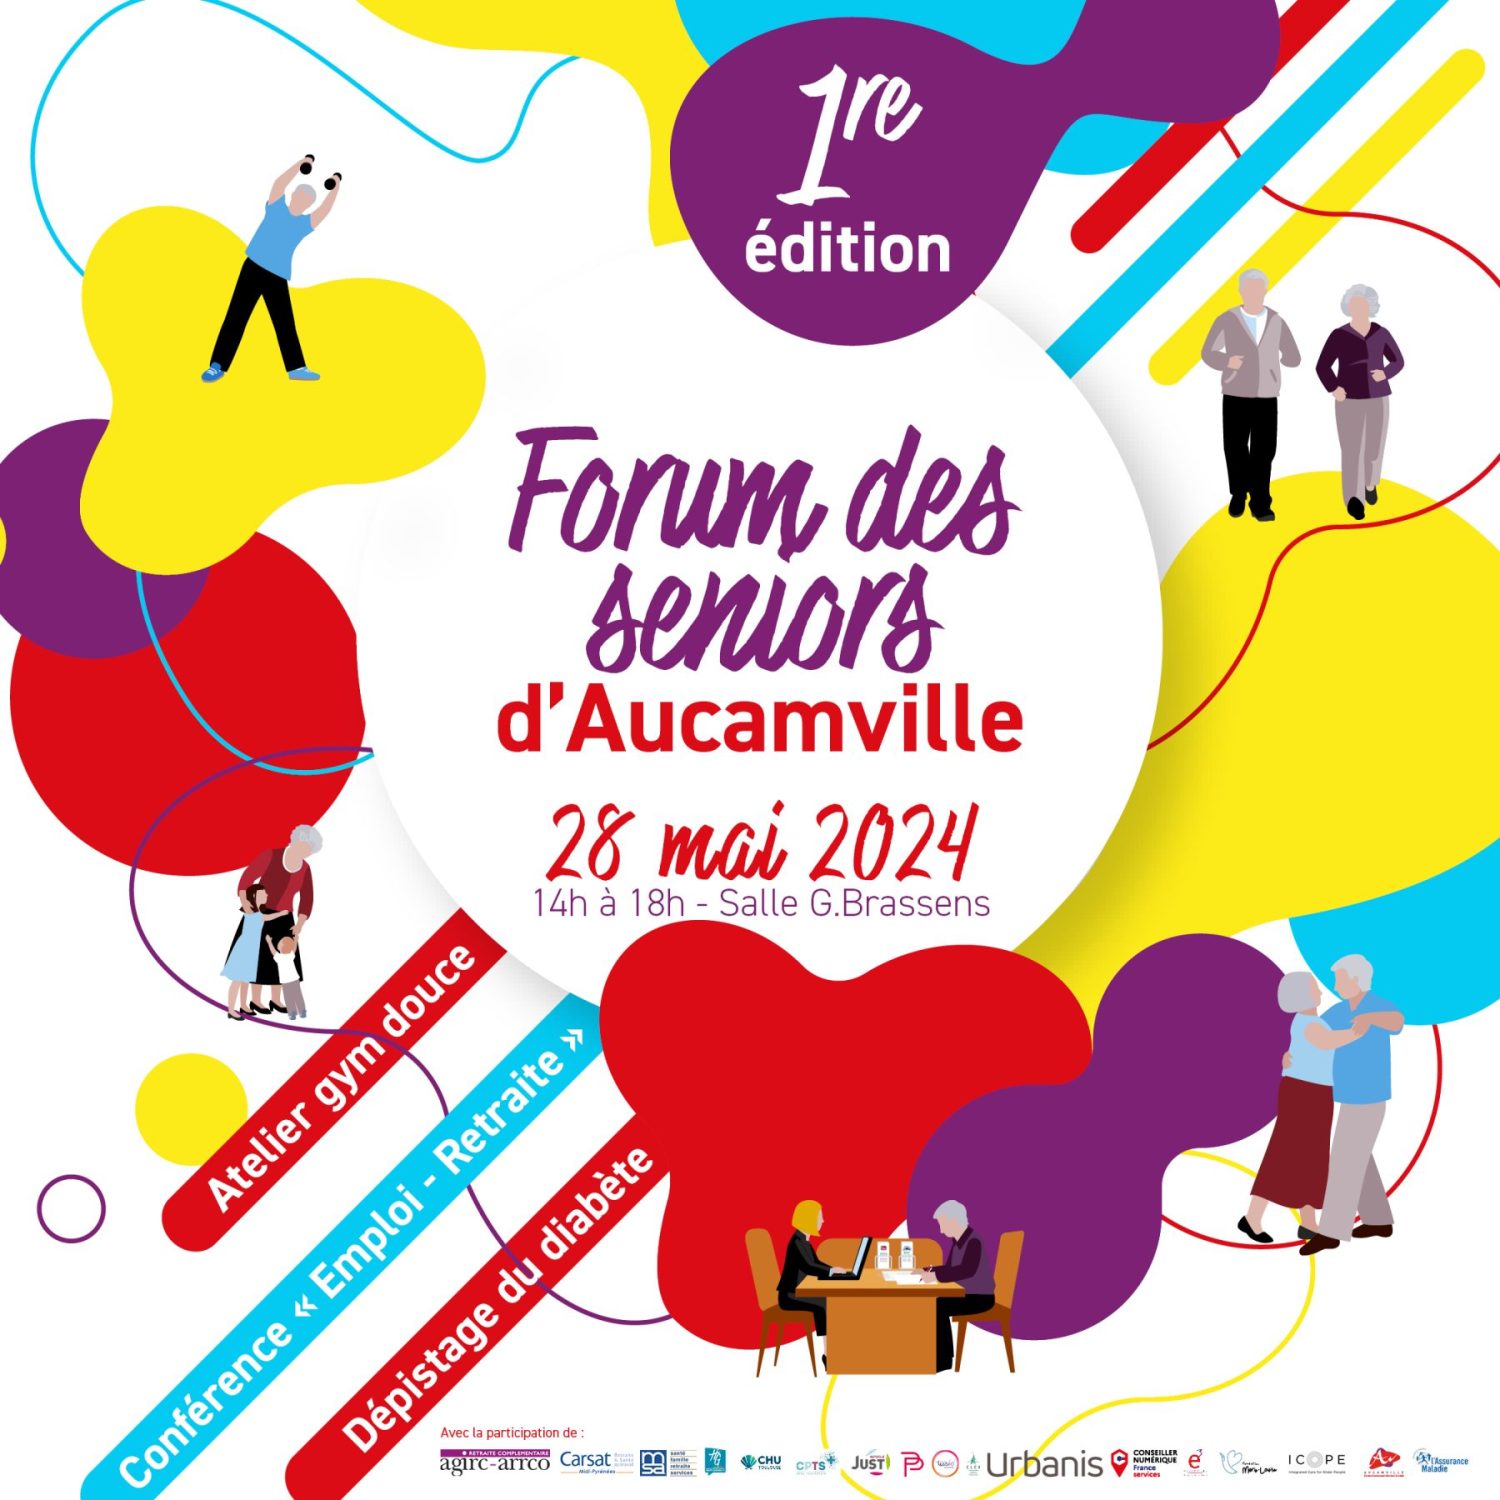 CCAS - Découvrez le 1er forum des seniors d'Aucamville !